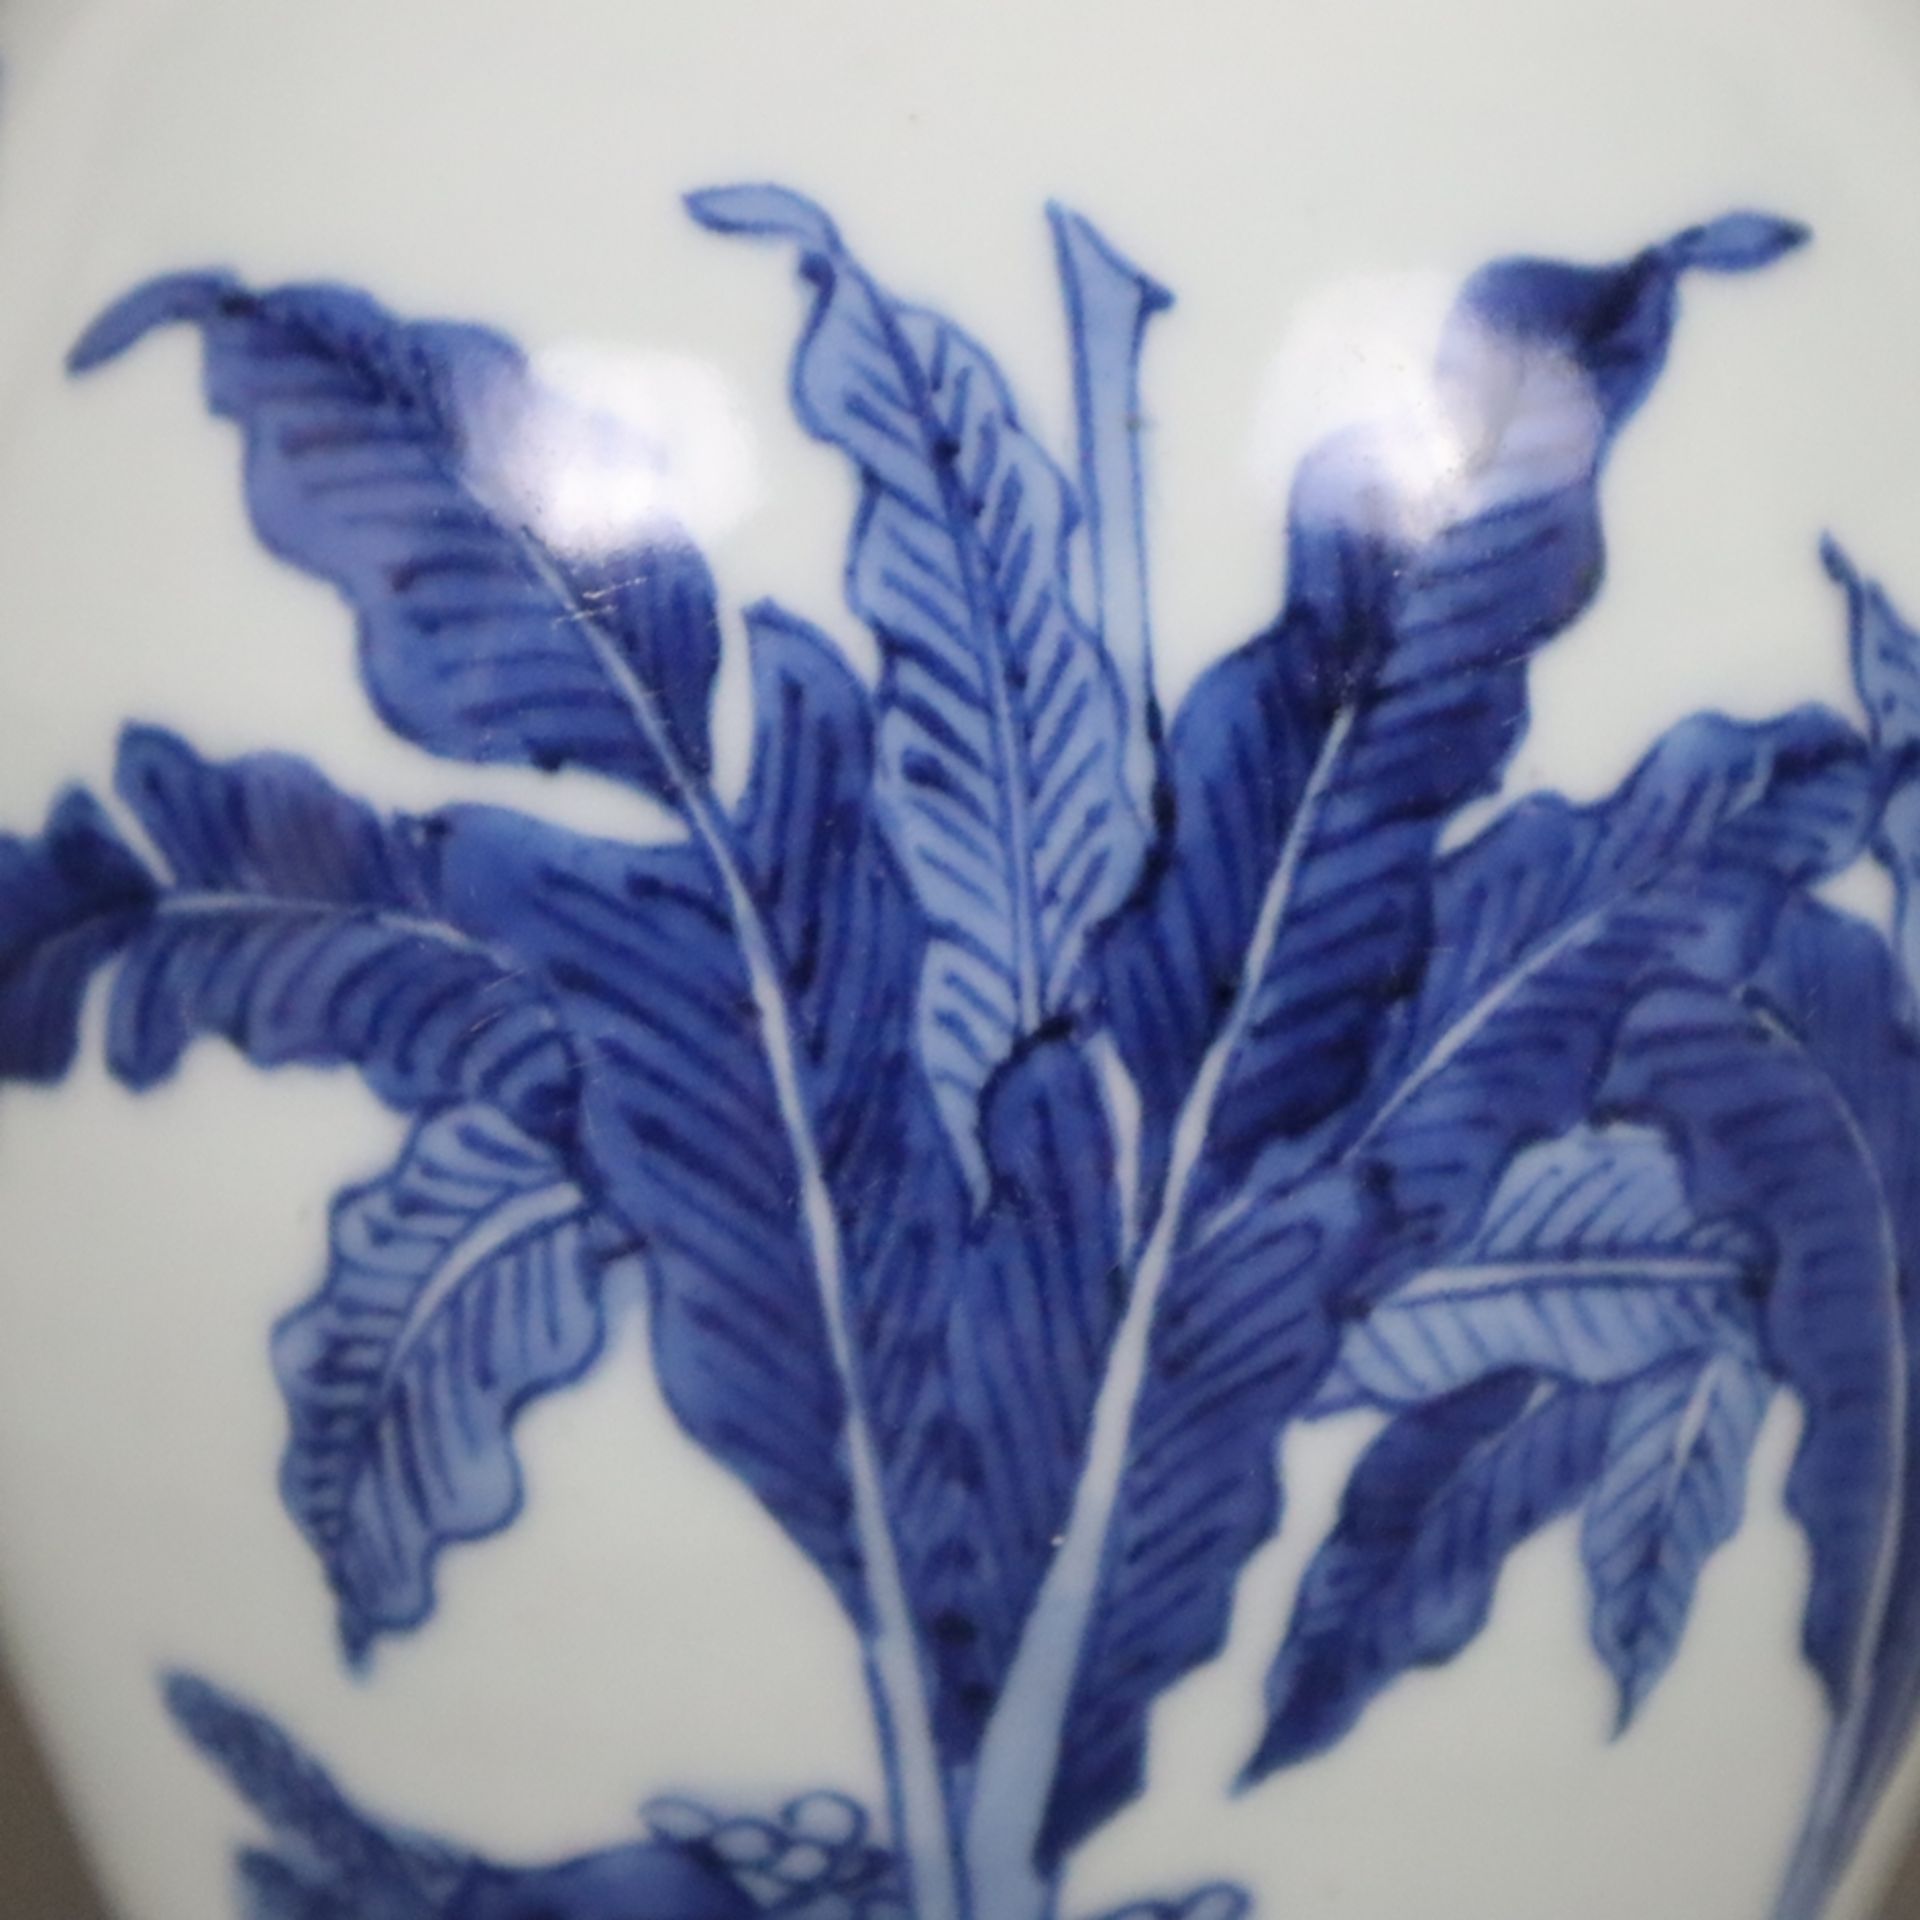 Blau-weiße Vase - China, Qing-Dynastie, Porzellan, ovoide Form, umlaufend in Unterglasurblau bemalt - Image 5 of 8